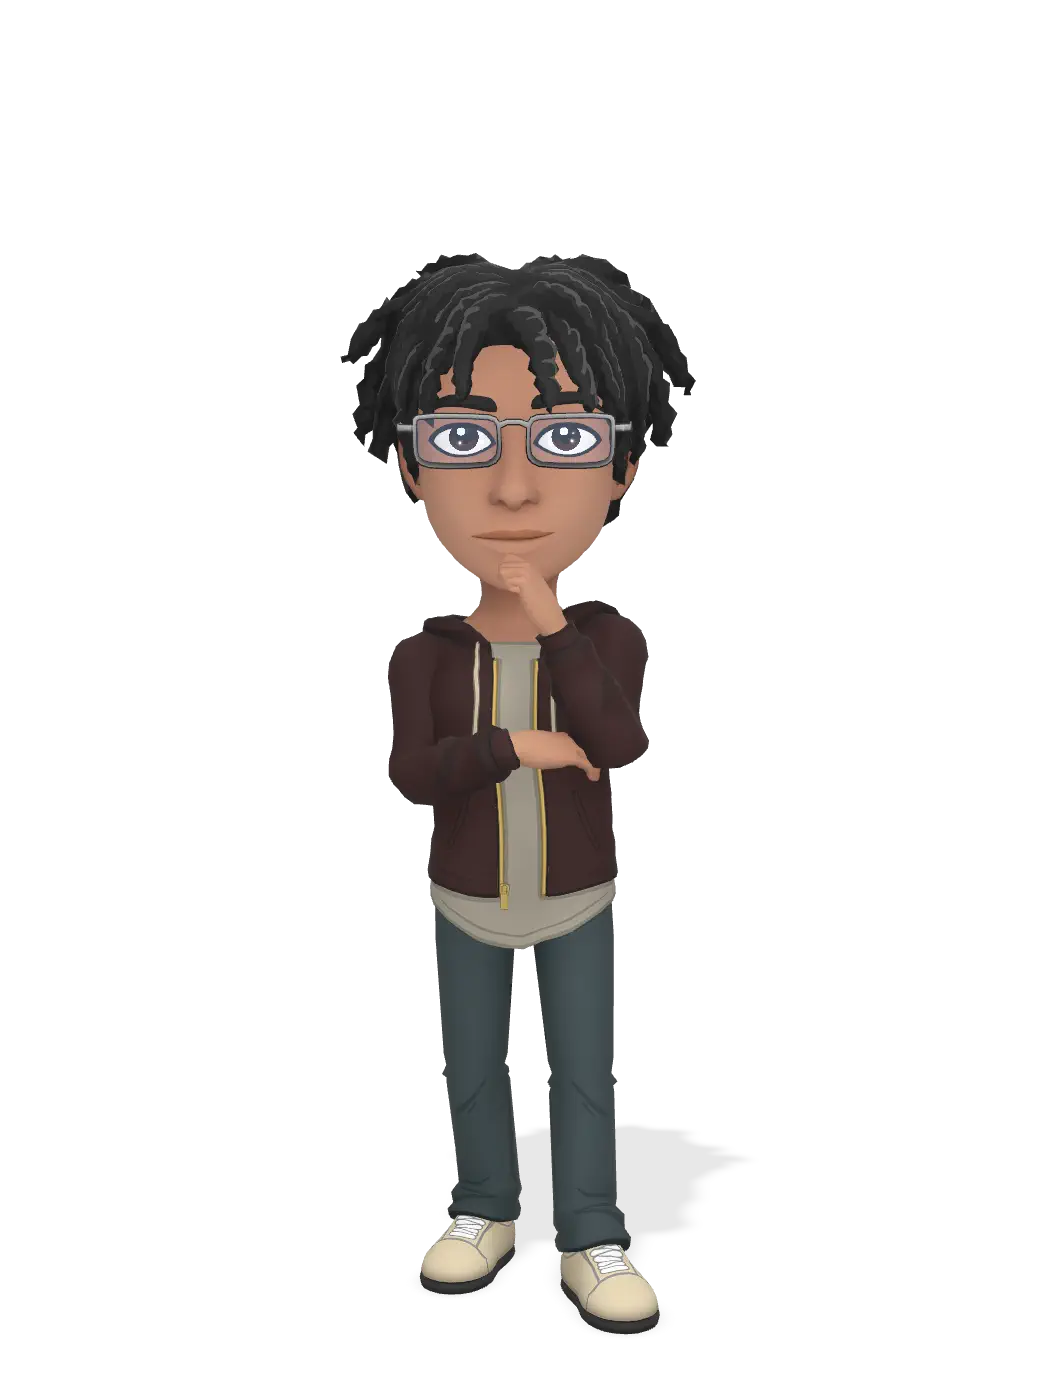 3D Bitmoji for jairson0 avatar